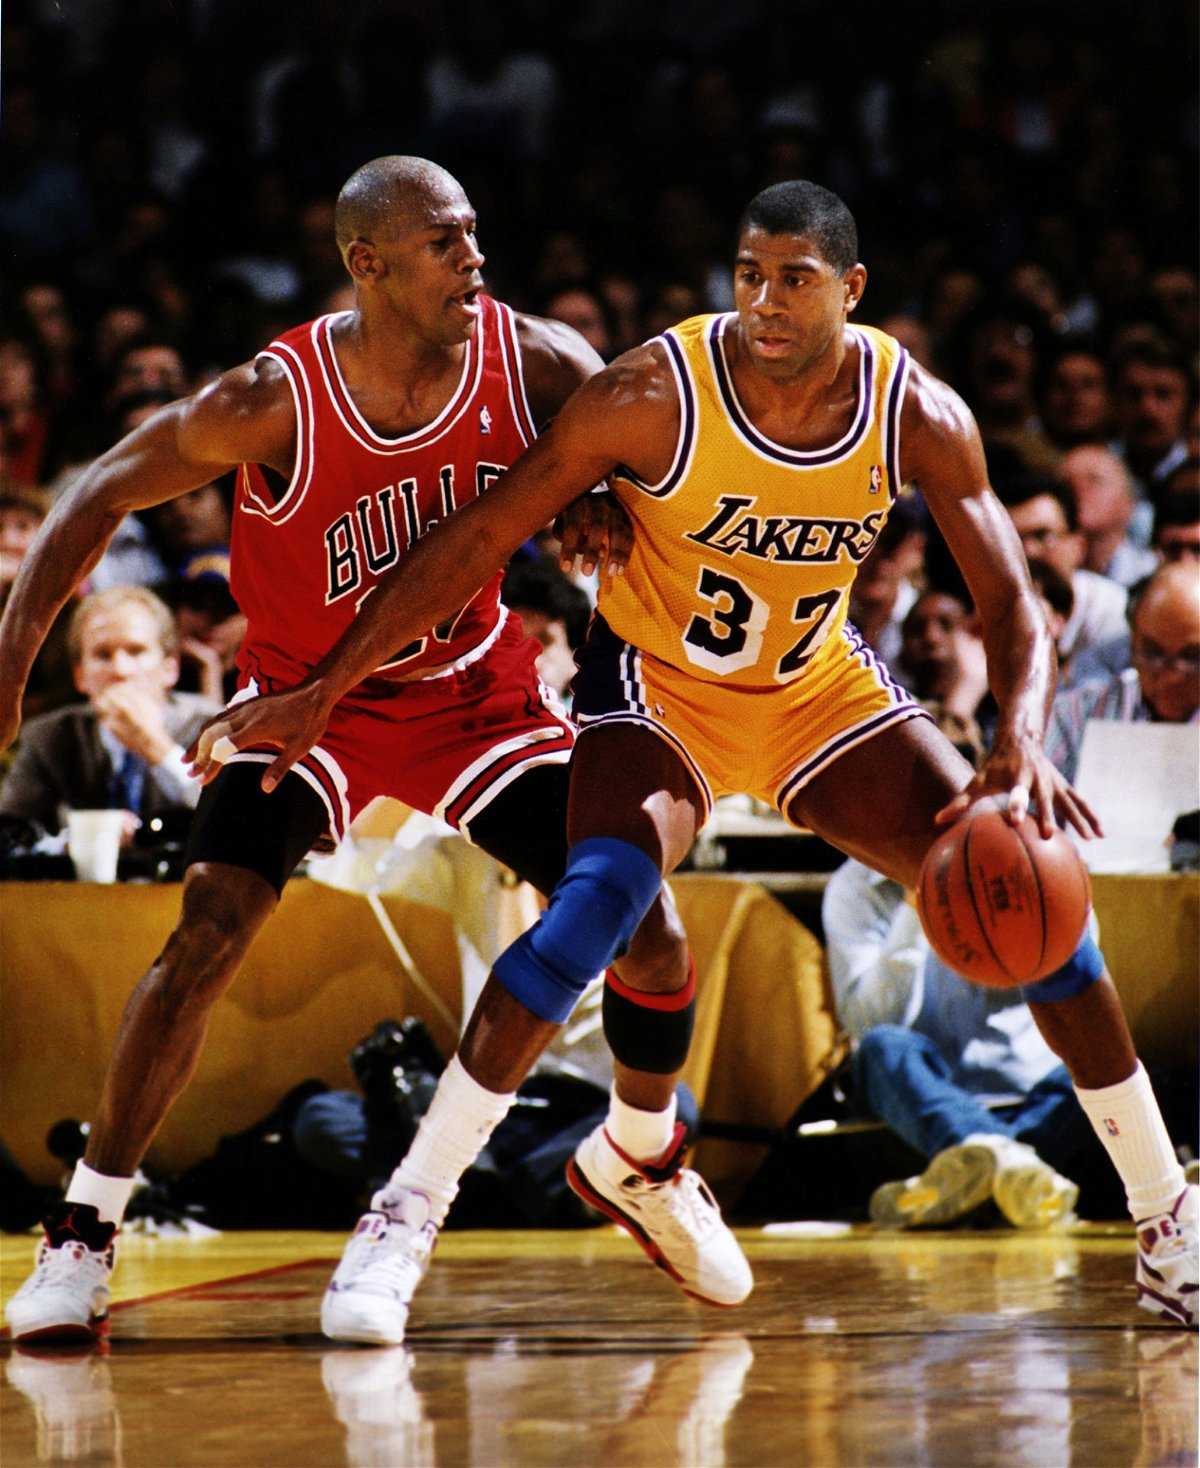 “Les fans nous auraient tués”: Michael Jordan a exprimé son seul regret après sa première bague NBA dans une rare interview de 1992